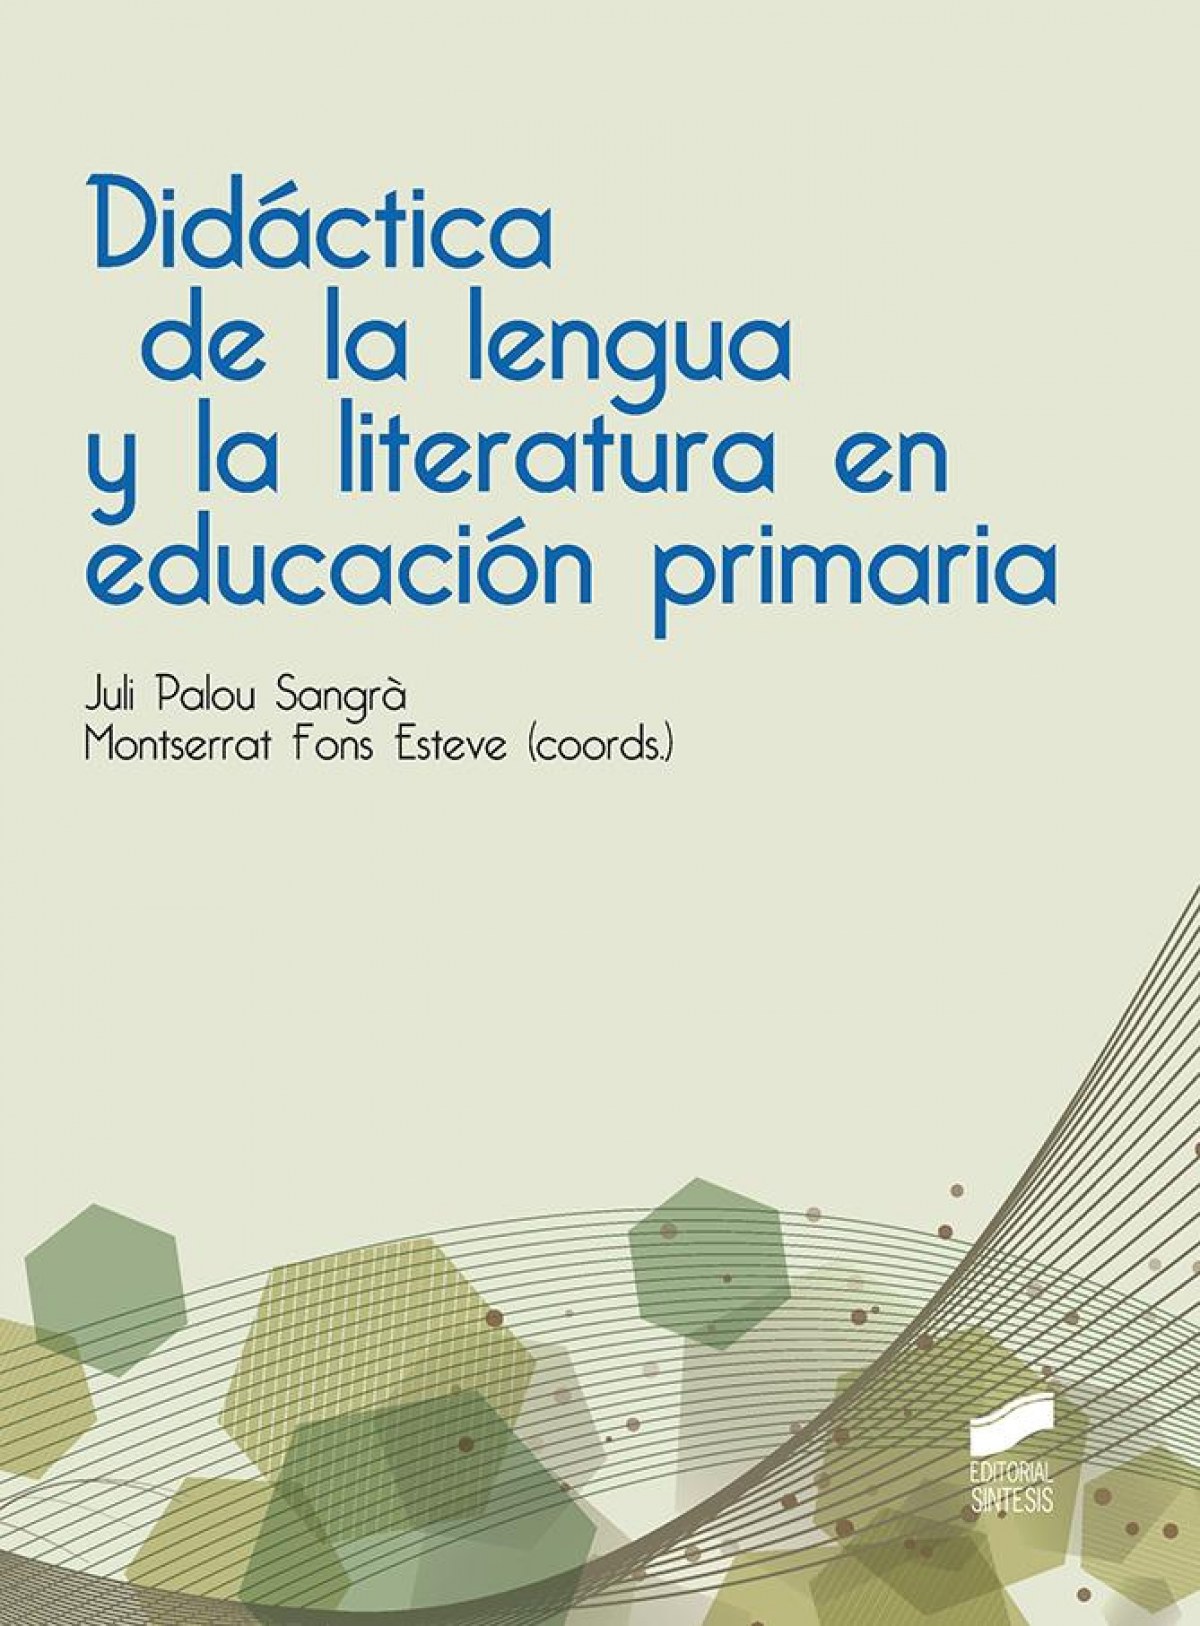 Didactica de la lengua y la literatura educacion primaria - Vv.Aa.